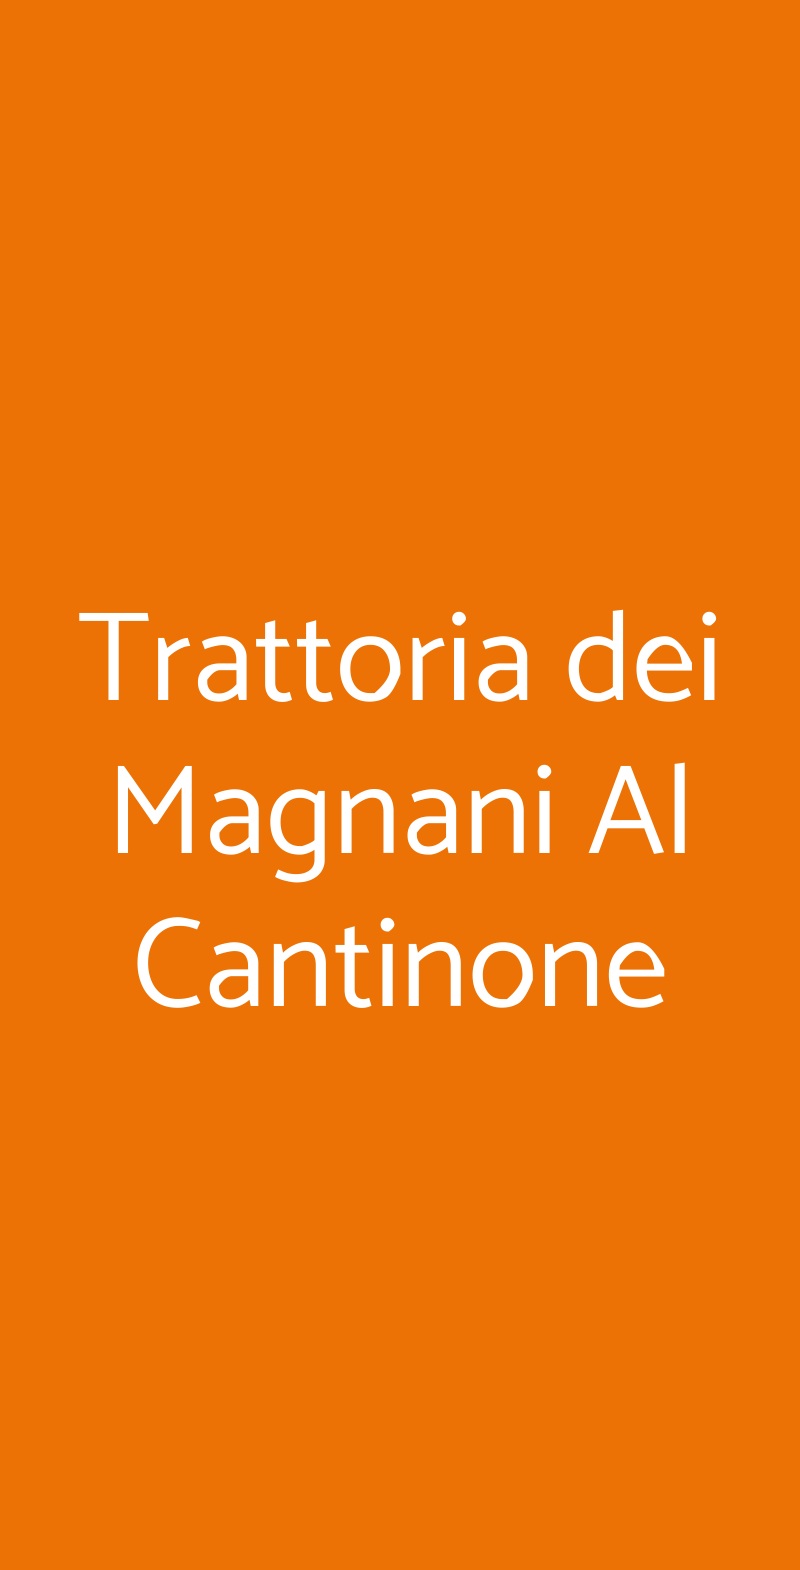 Trattoria dei Magnani Al Cantinone Milano menù 1 pagina